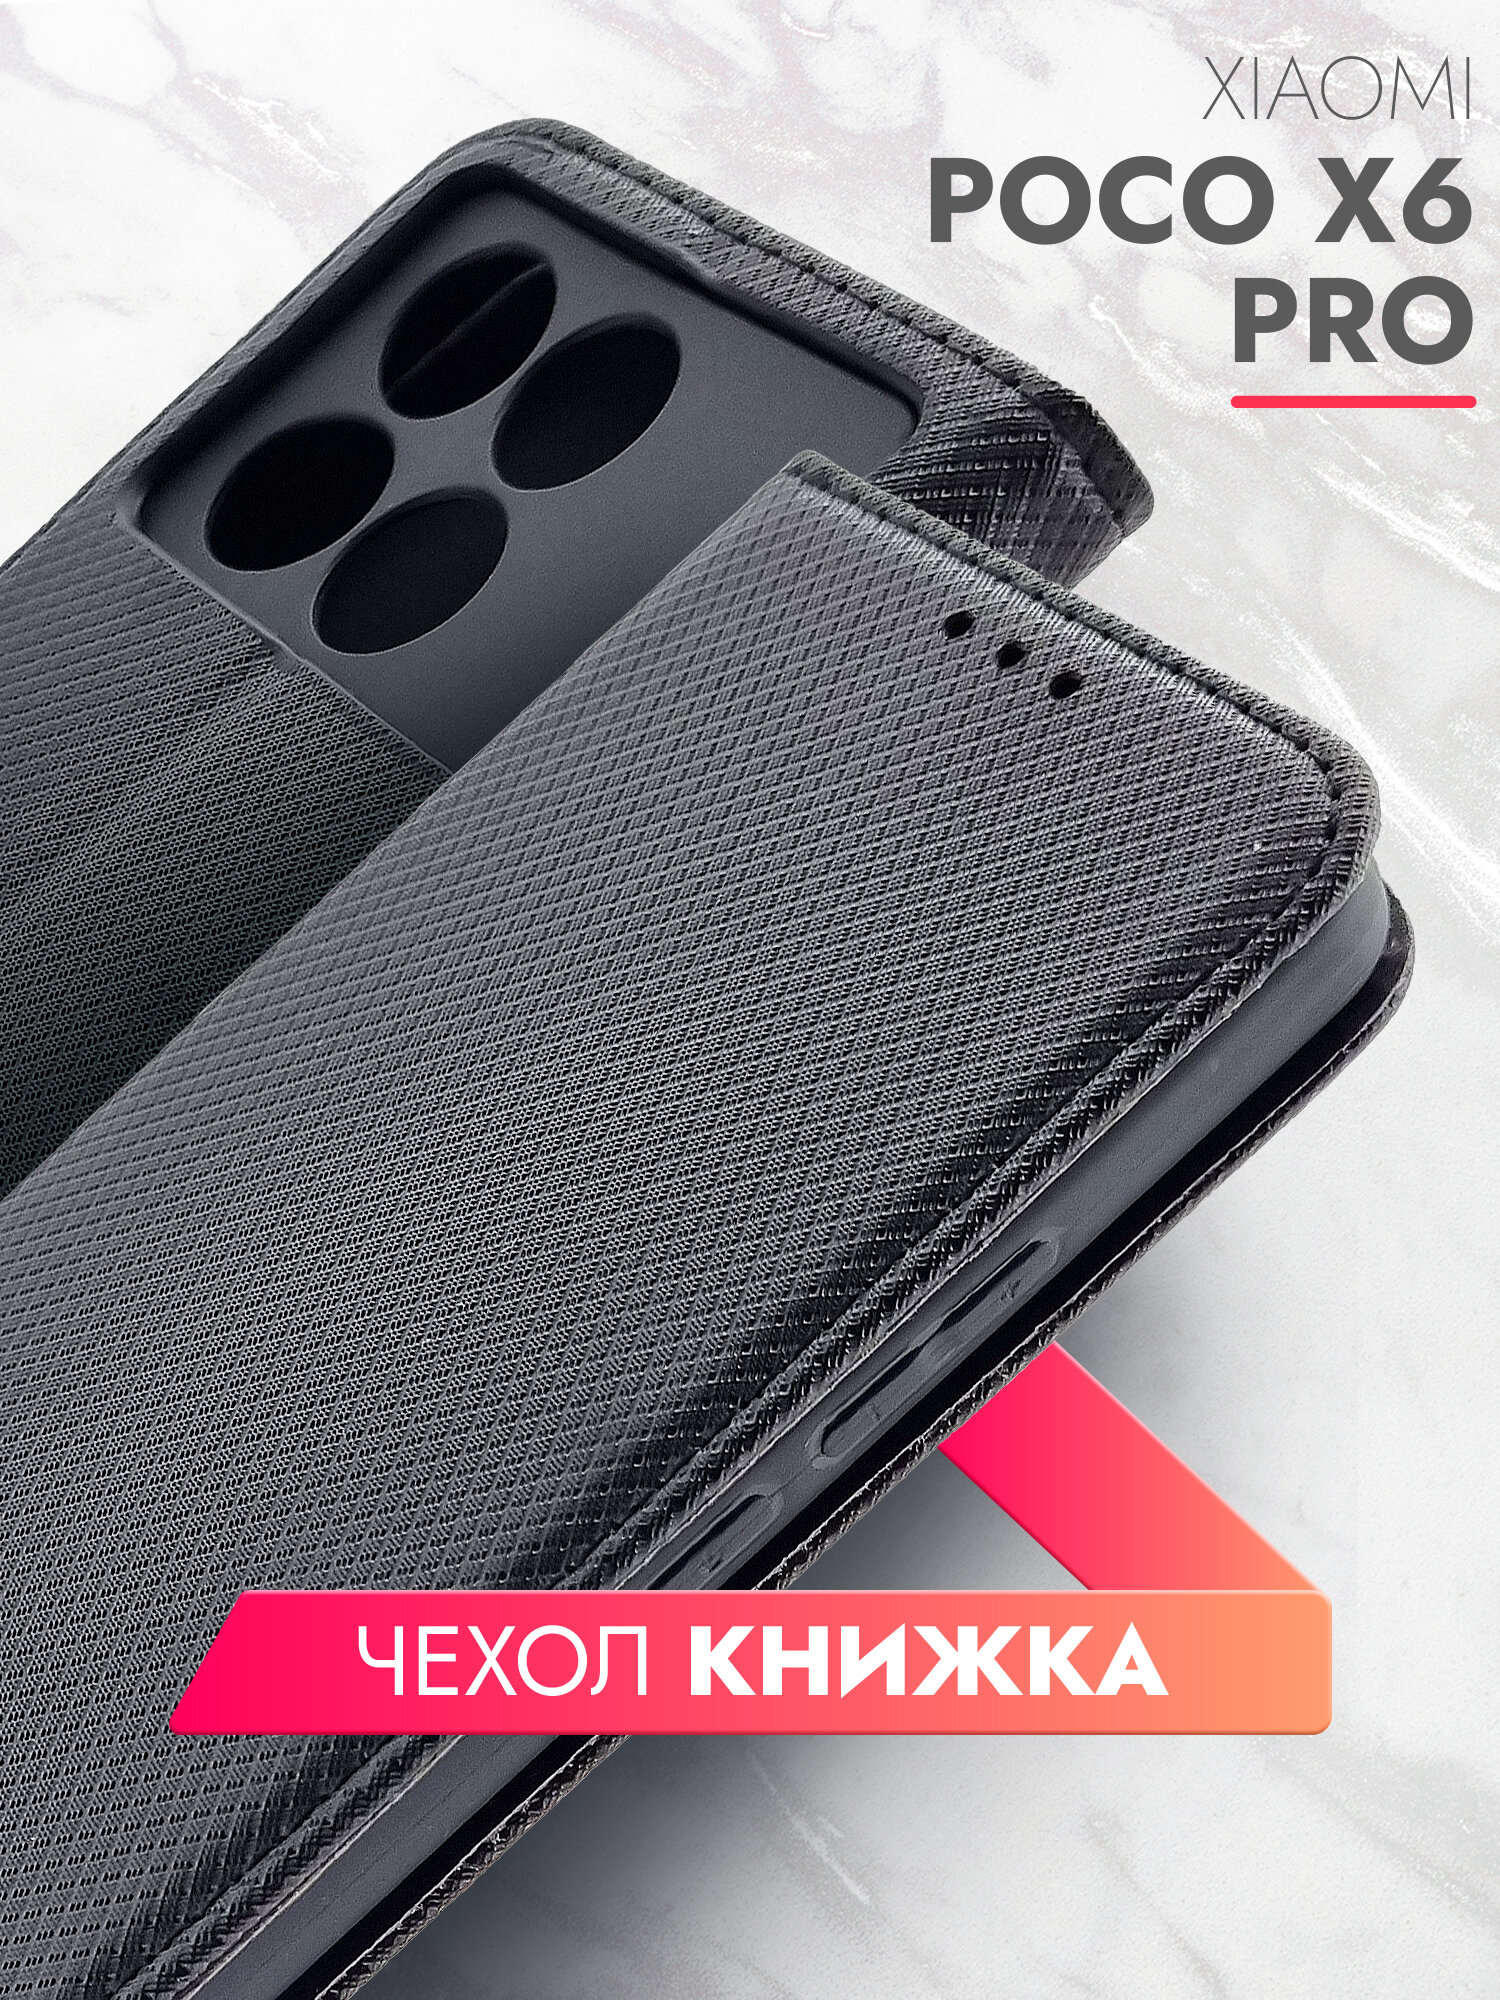 Чехол на Xiaomi POCO X6 Pro (Ксиоми Поко Х6 Про) черный книжка плетёнка с функцией подставки отделением для пластиковых карт и магнитами Fold Case, Brozo